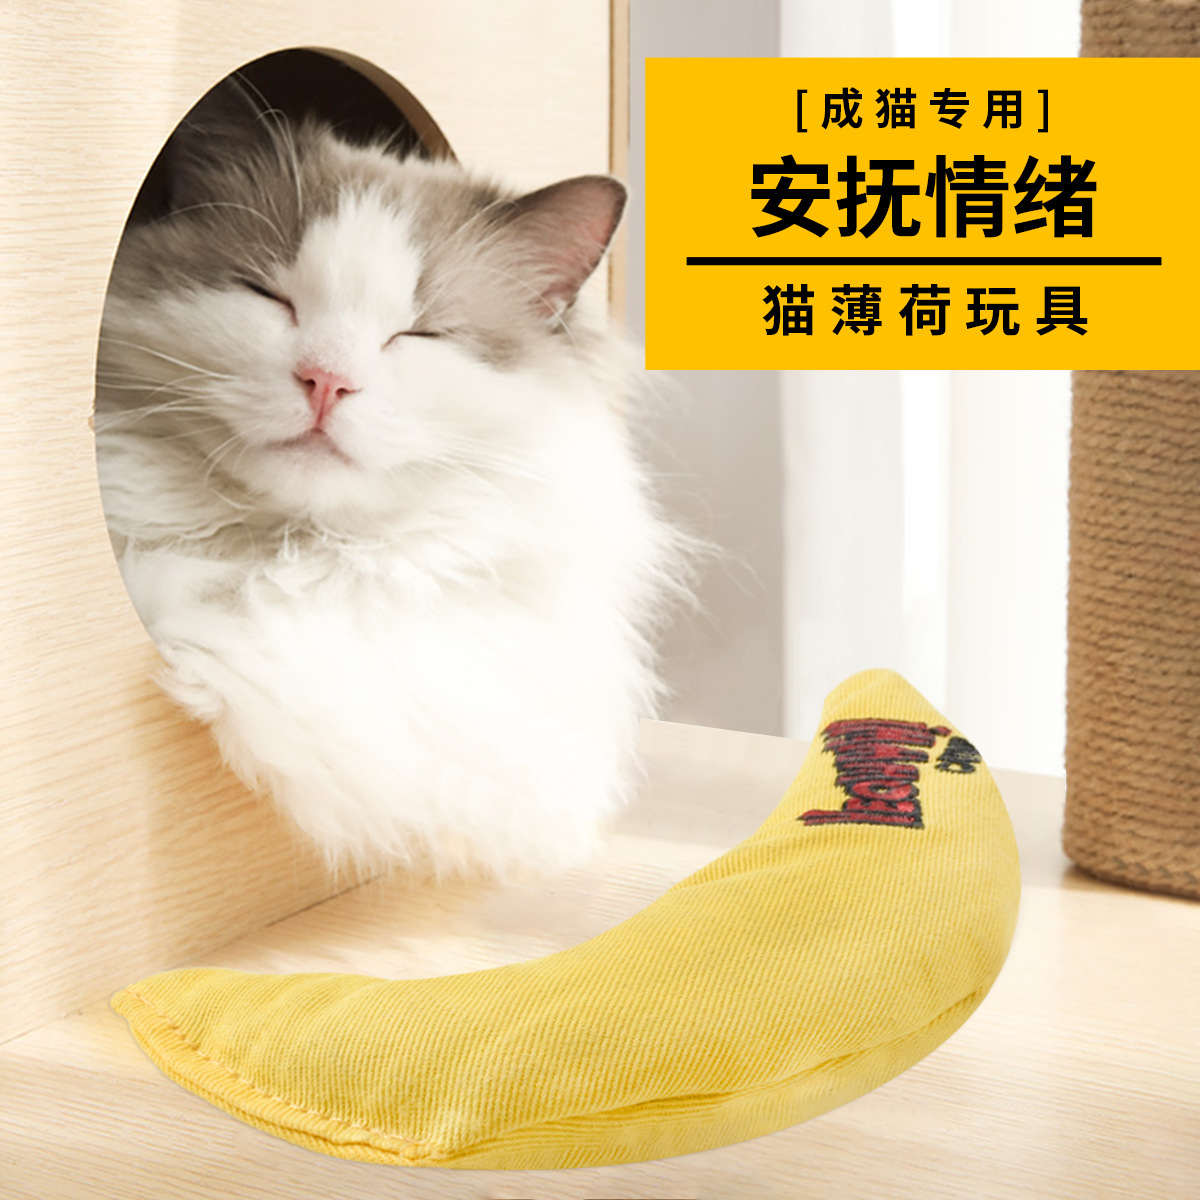 猫咪解忧玩具进口薄荷猫咪薄荷玩具香蕉形状帆布材质互动玩具逗猫